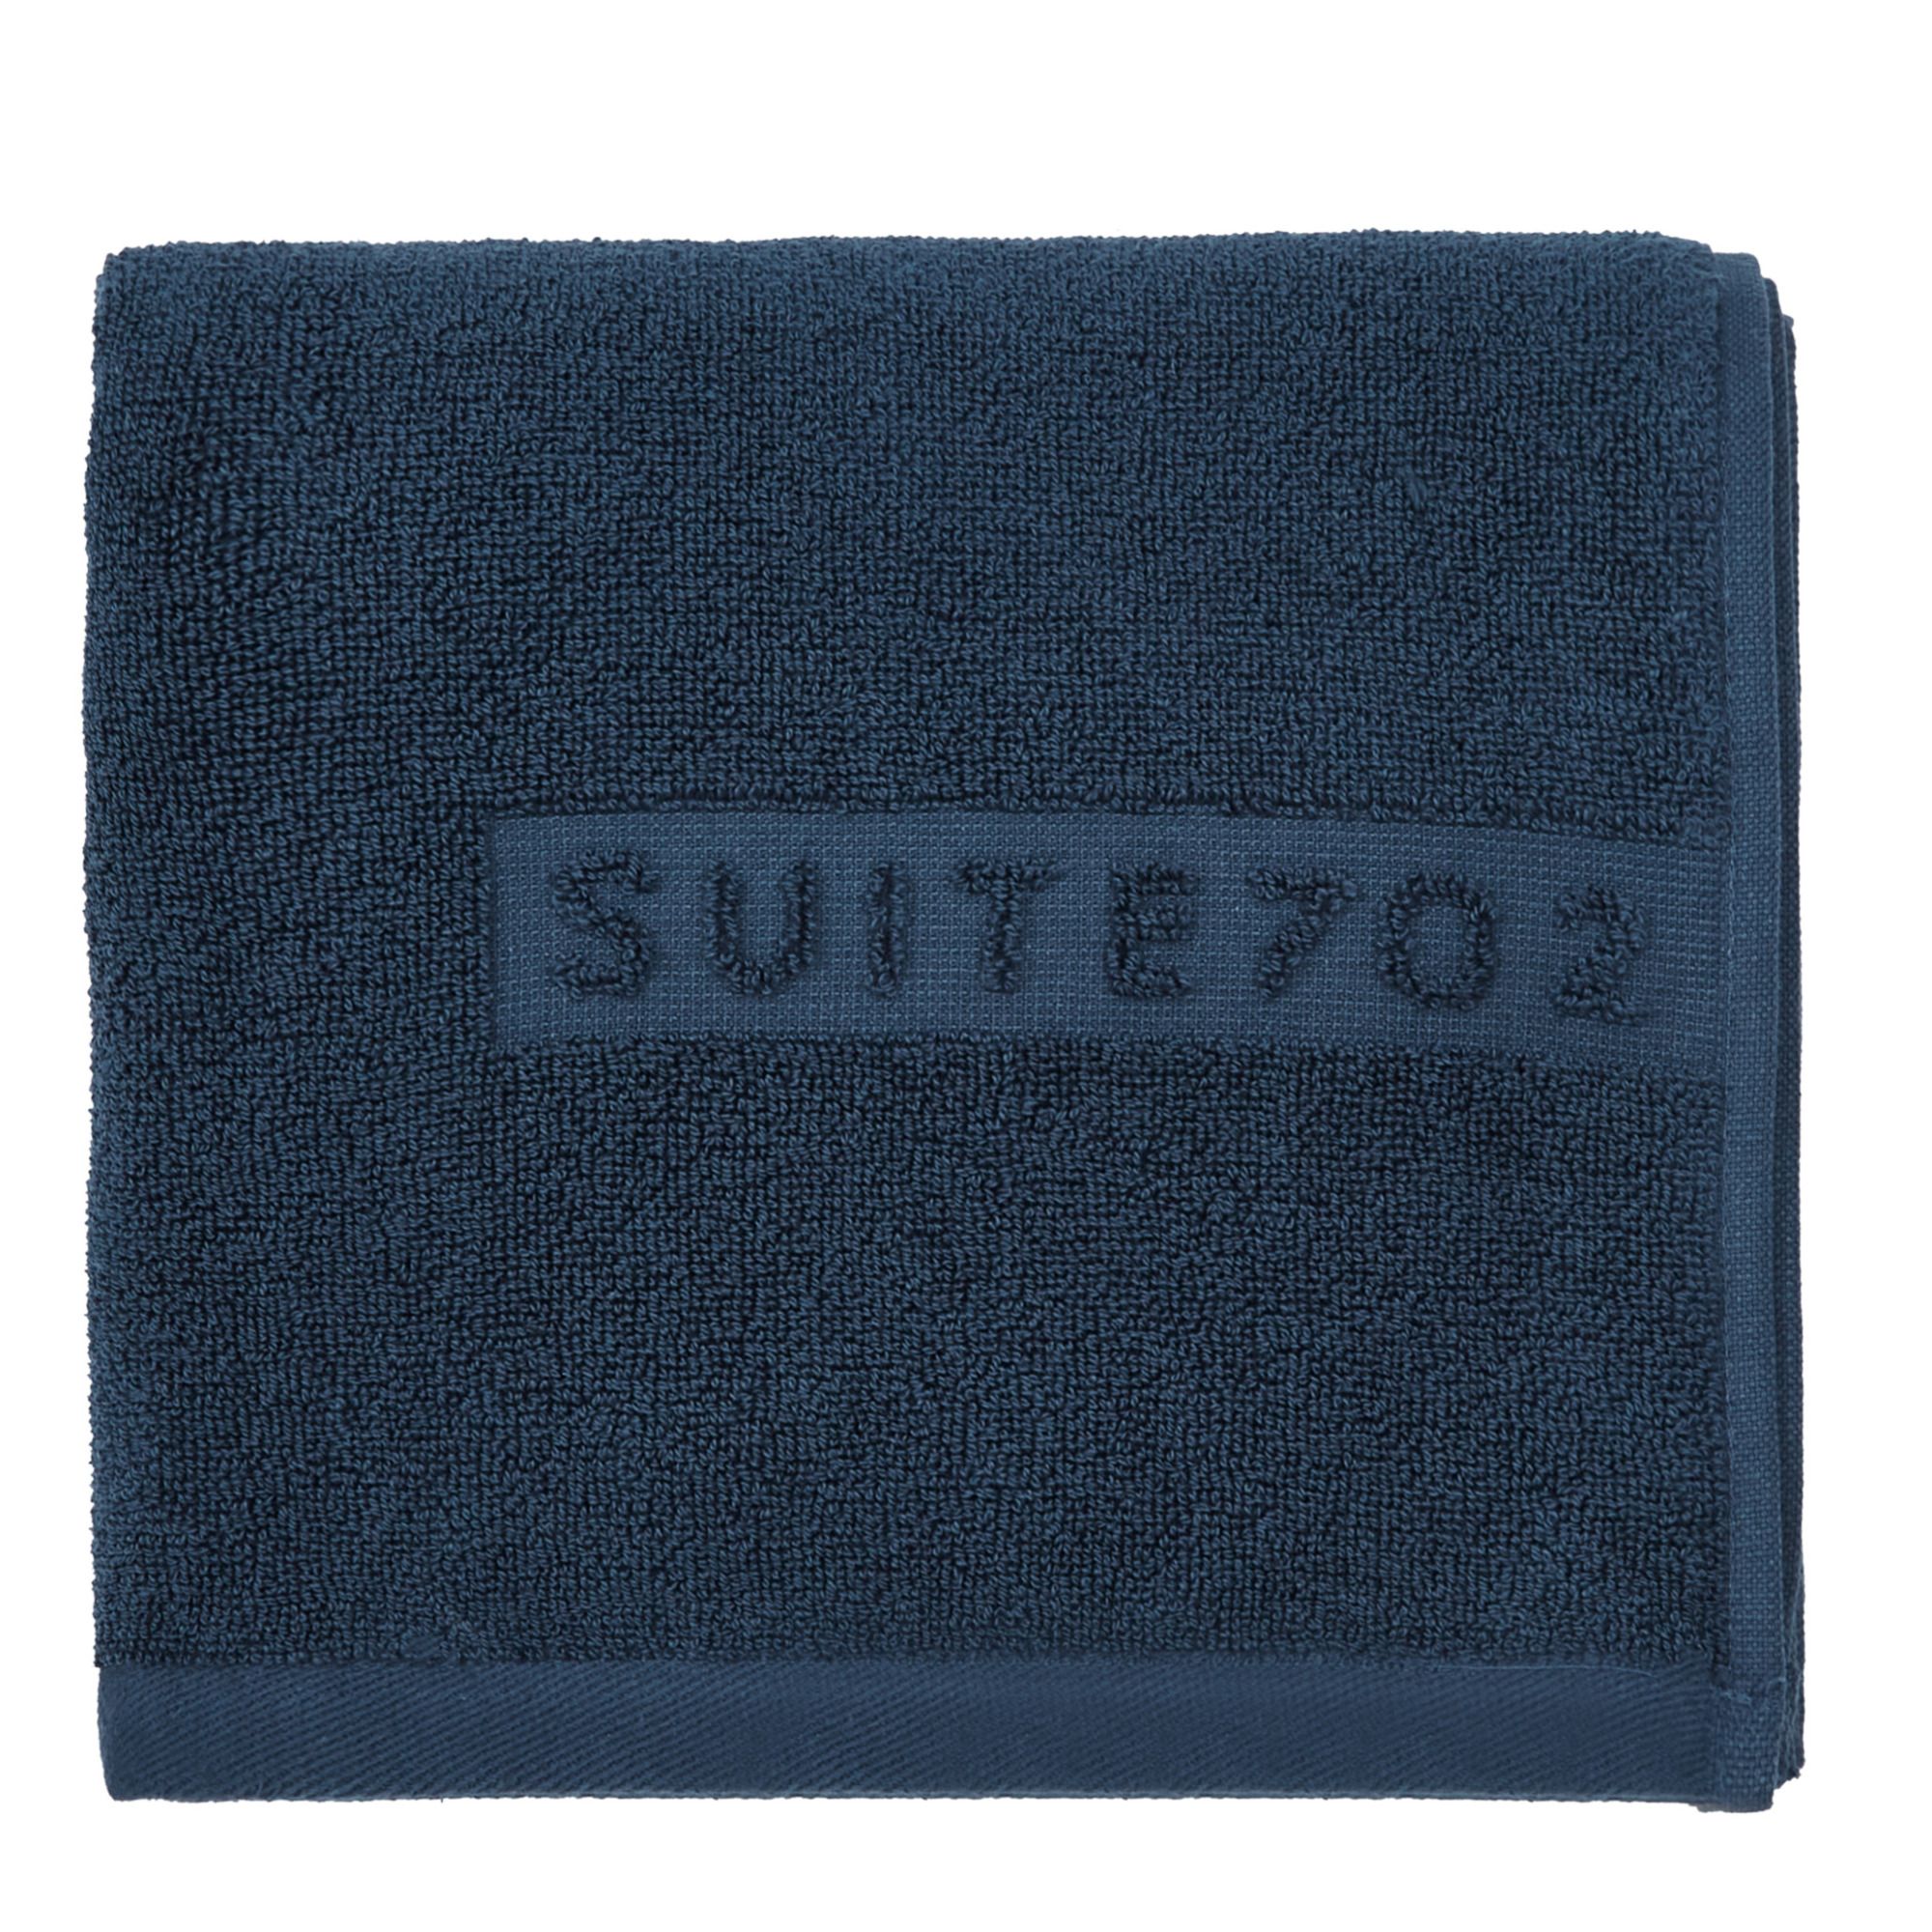 Suite 702 - Serviette de toilette en coton bio - Bleu marine